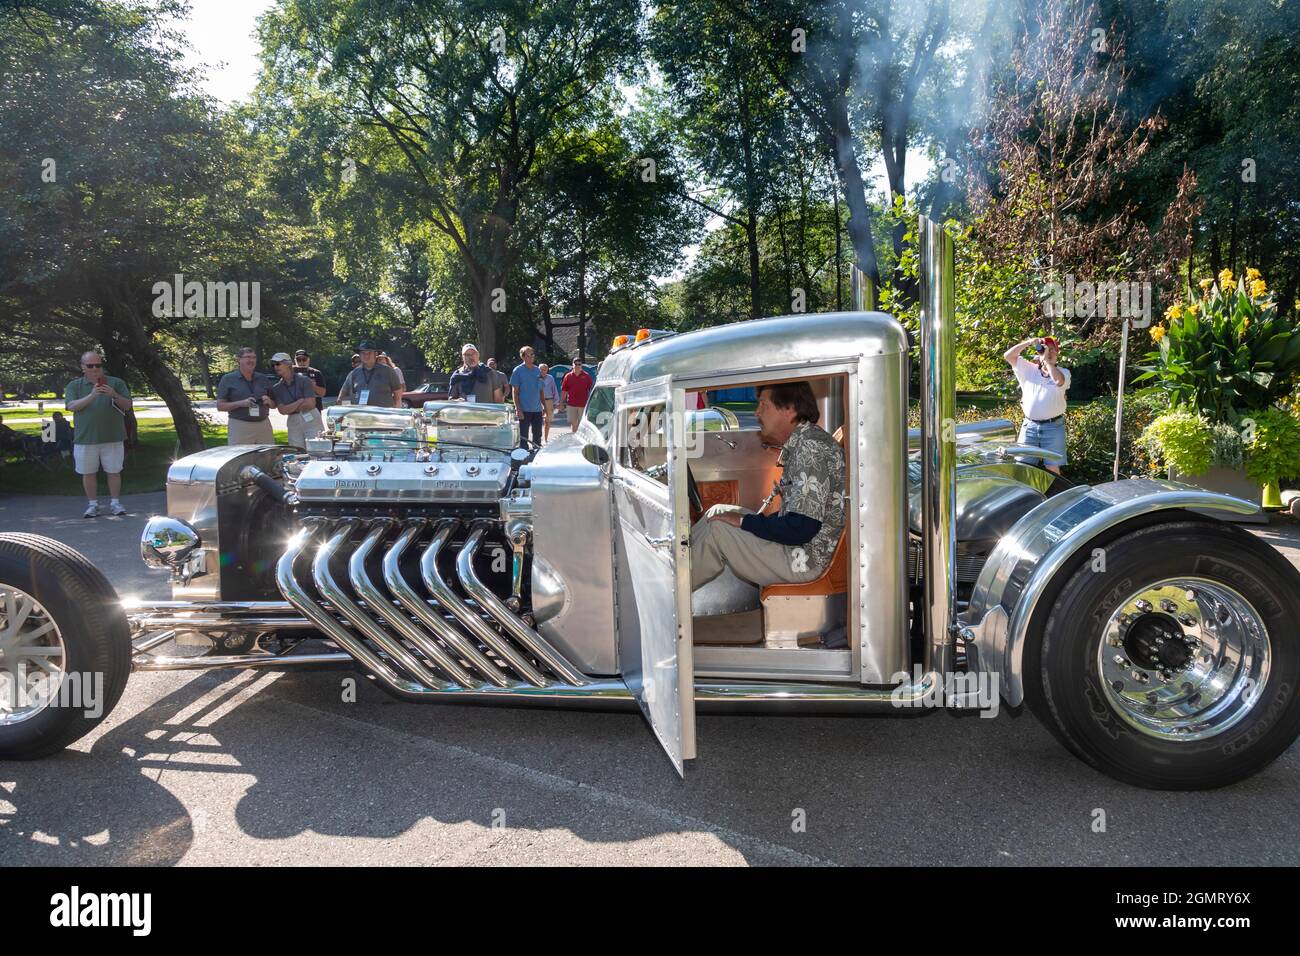 Grosse Pointe Shores, Michigan - Piss'd Off Pete, un véhicule construit par le designer et l'artiste Randy Grubb aux yeux sur le Design Auto show. Augmentation du régime de la Grubb Banque D'Images